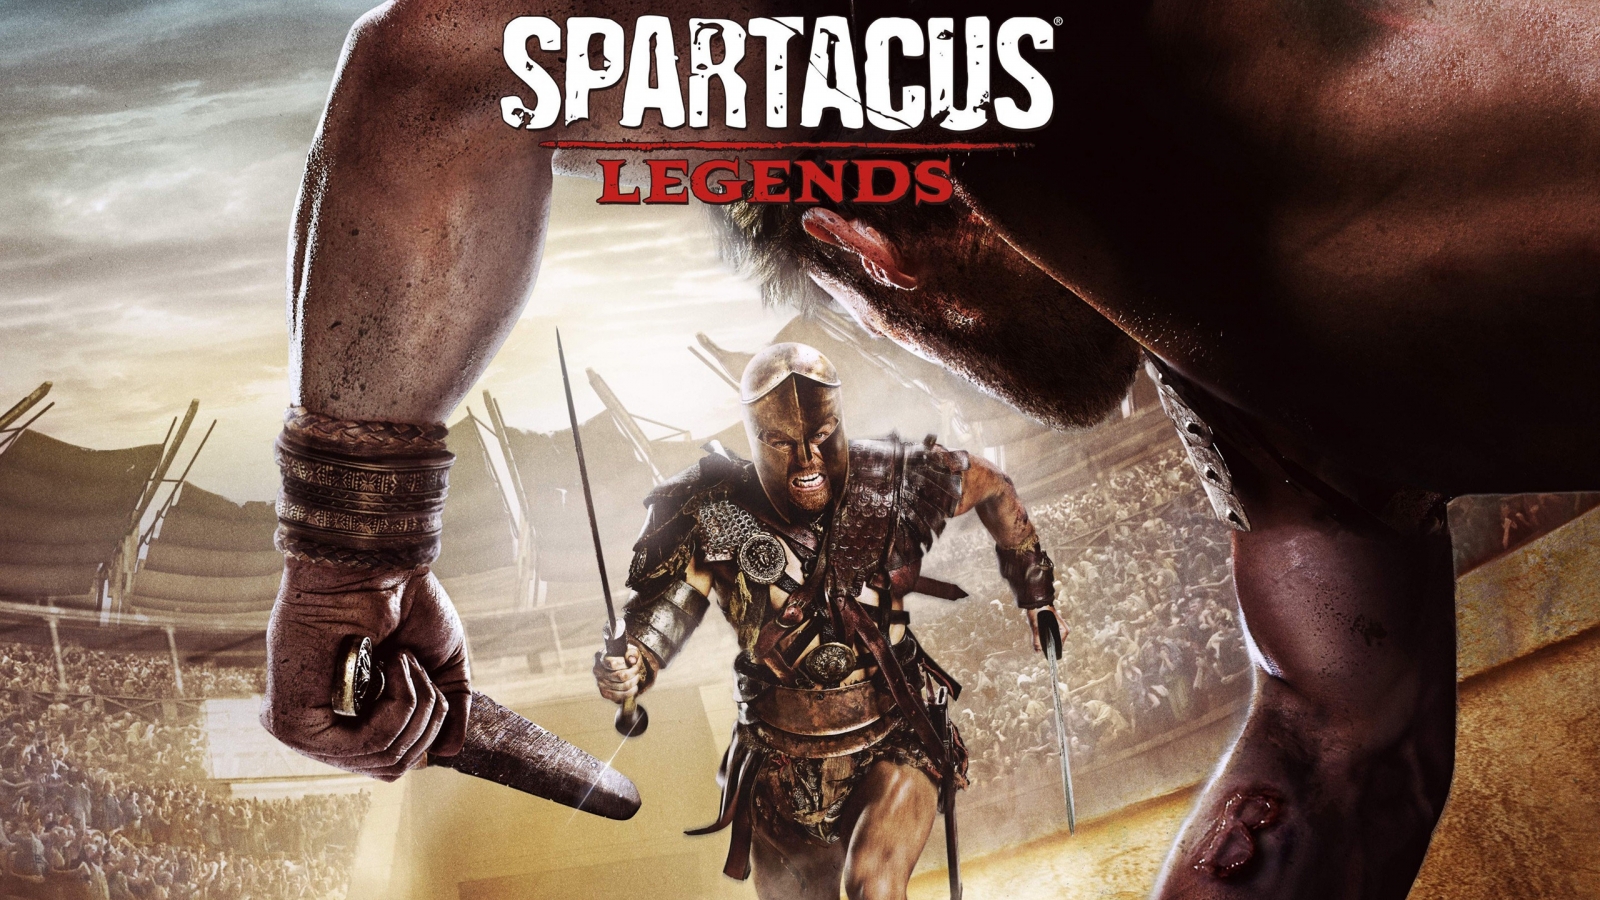 Spartacus Legends Hd Wallpaper Wallpaperfx - Spartacus Legends Xbox 360 - HD Wallpaper 